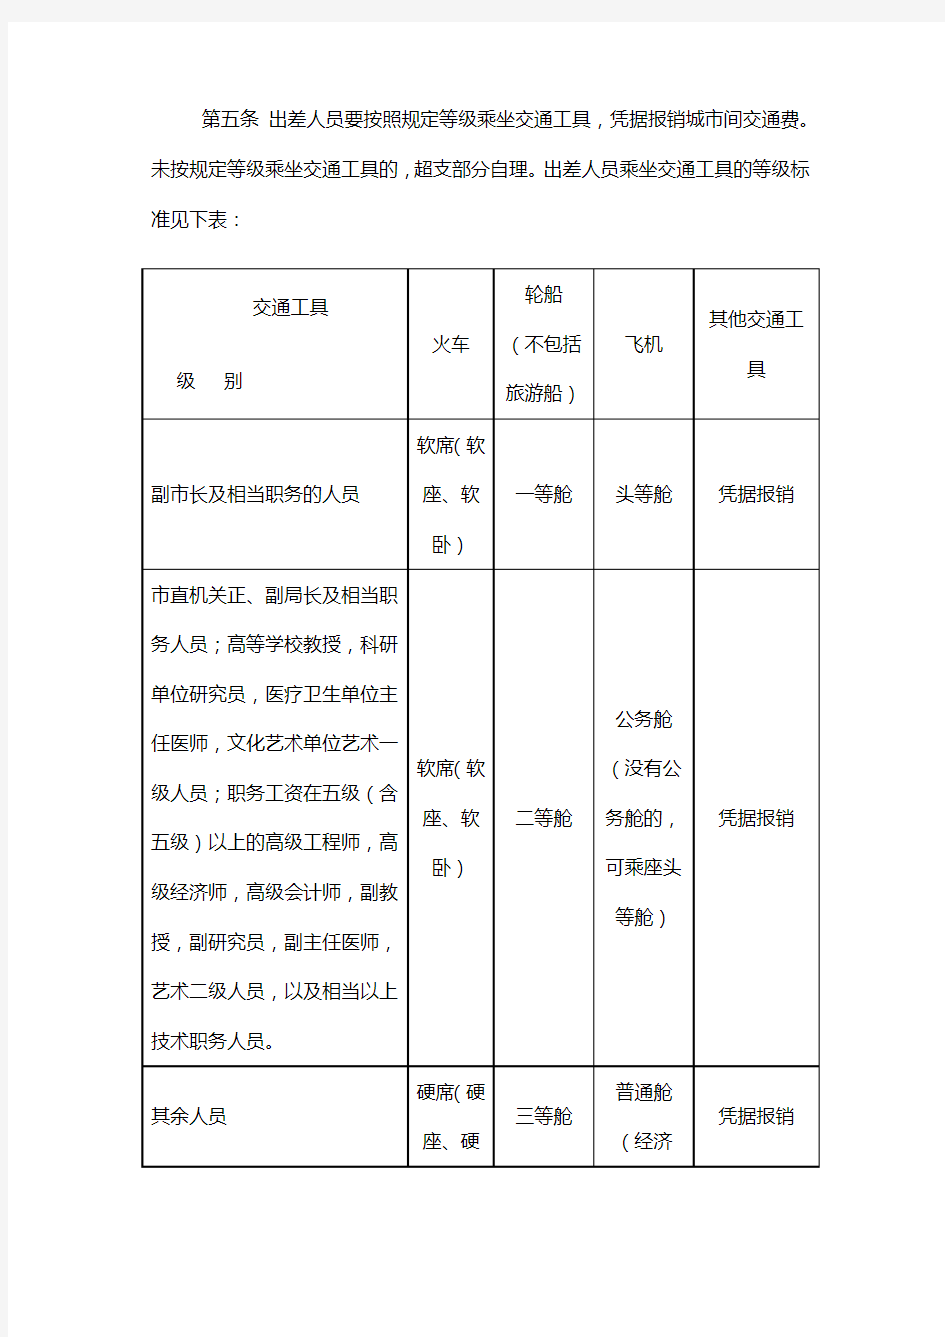 关于印发《深圳市市直机关和事业单位差旅费管理办法》的通知